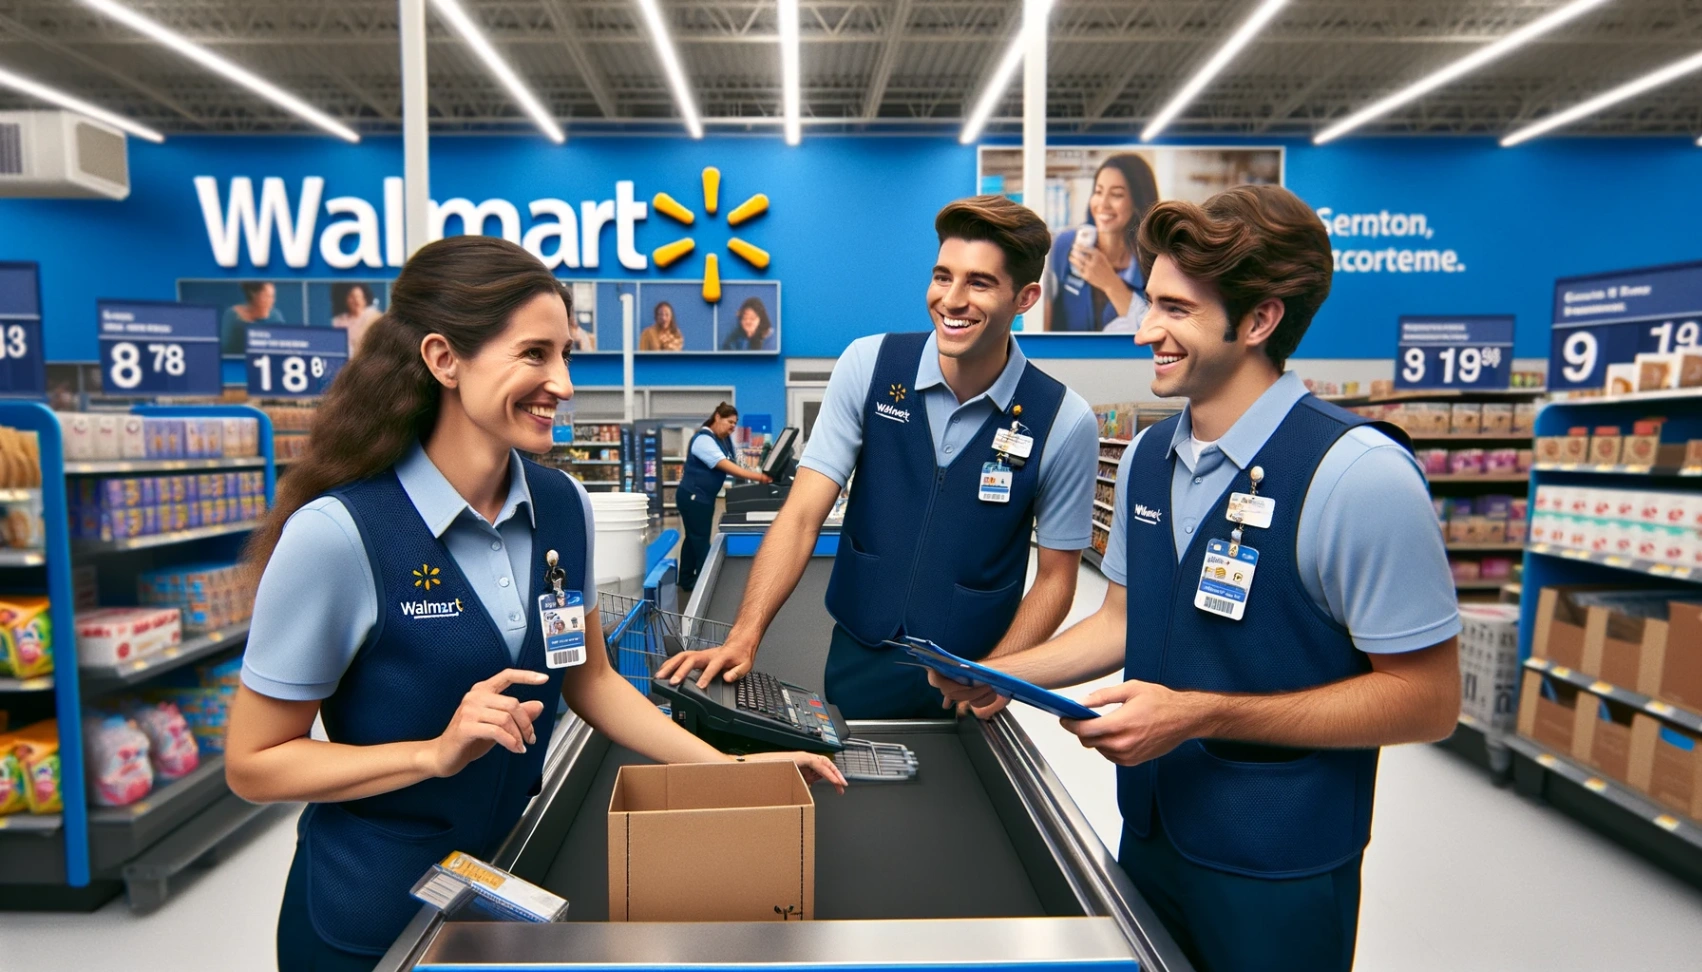 Offres d'emploi de Walmart - Apprenez comment postuler en ligne